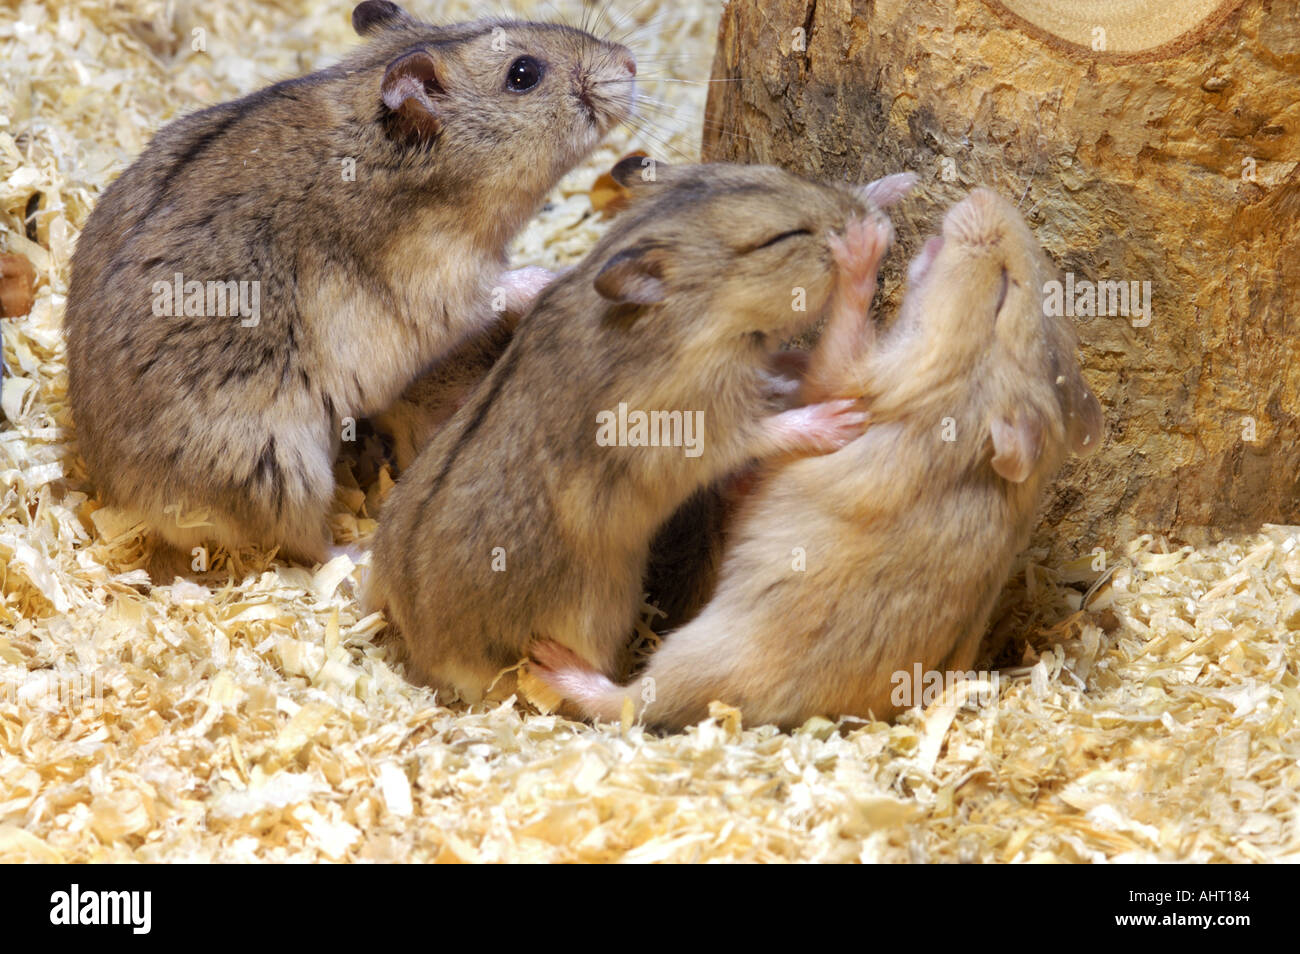 CAMPBELLS HAMSTER babies quarrel fight pugnacious controversy quarrelsome  Stock Photo